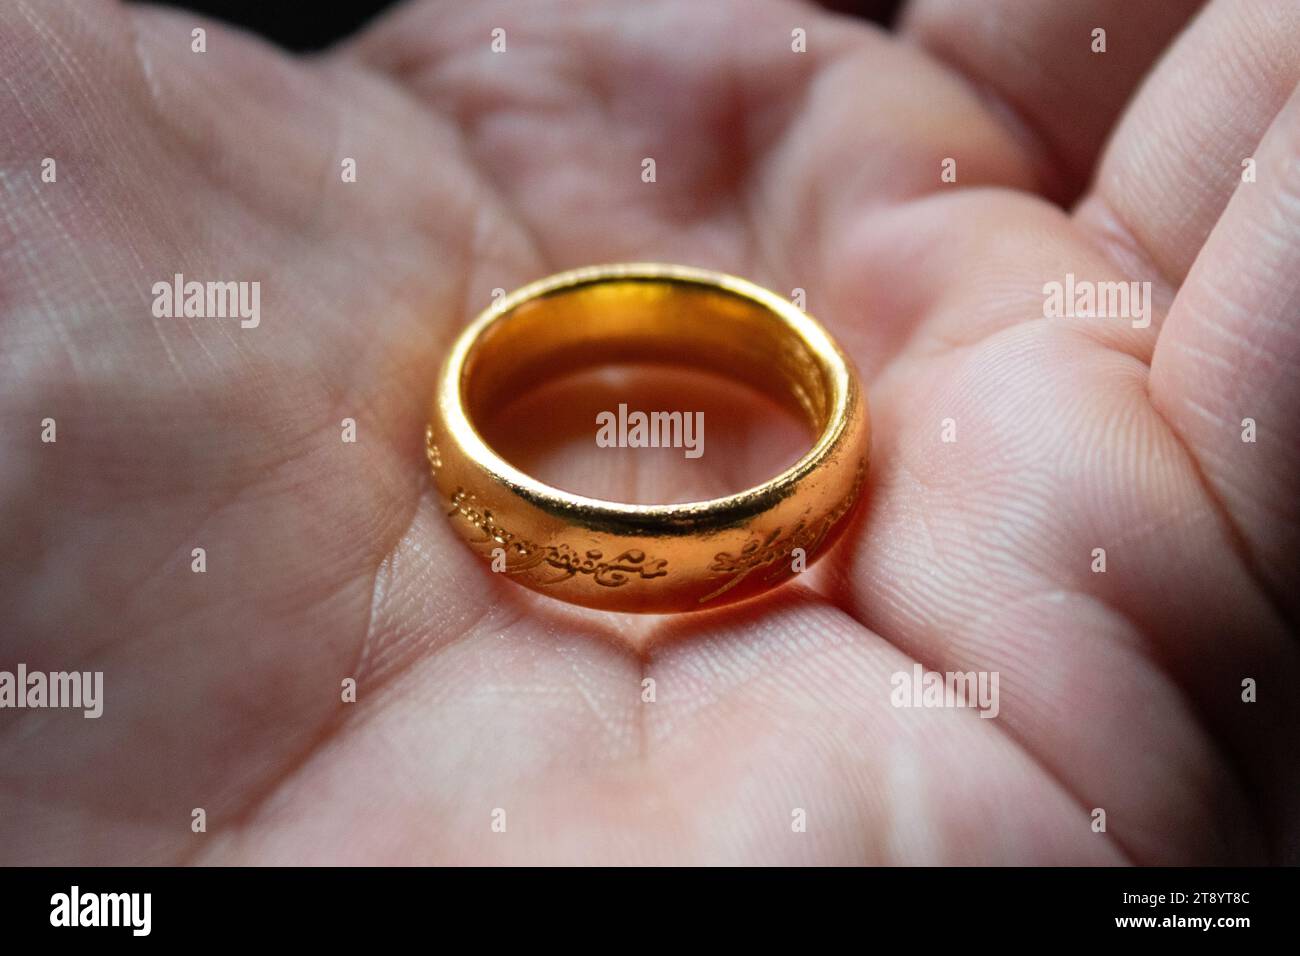 L'unico anello del Signore degli anelli filtra su una mano